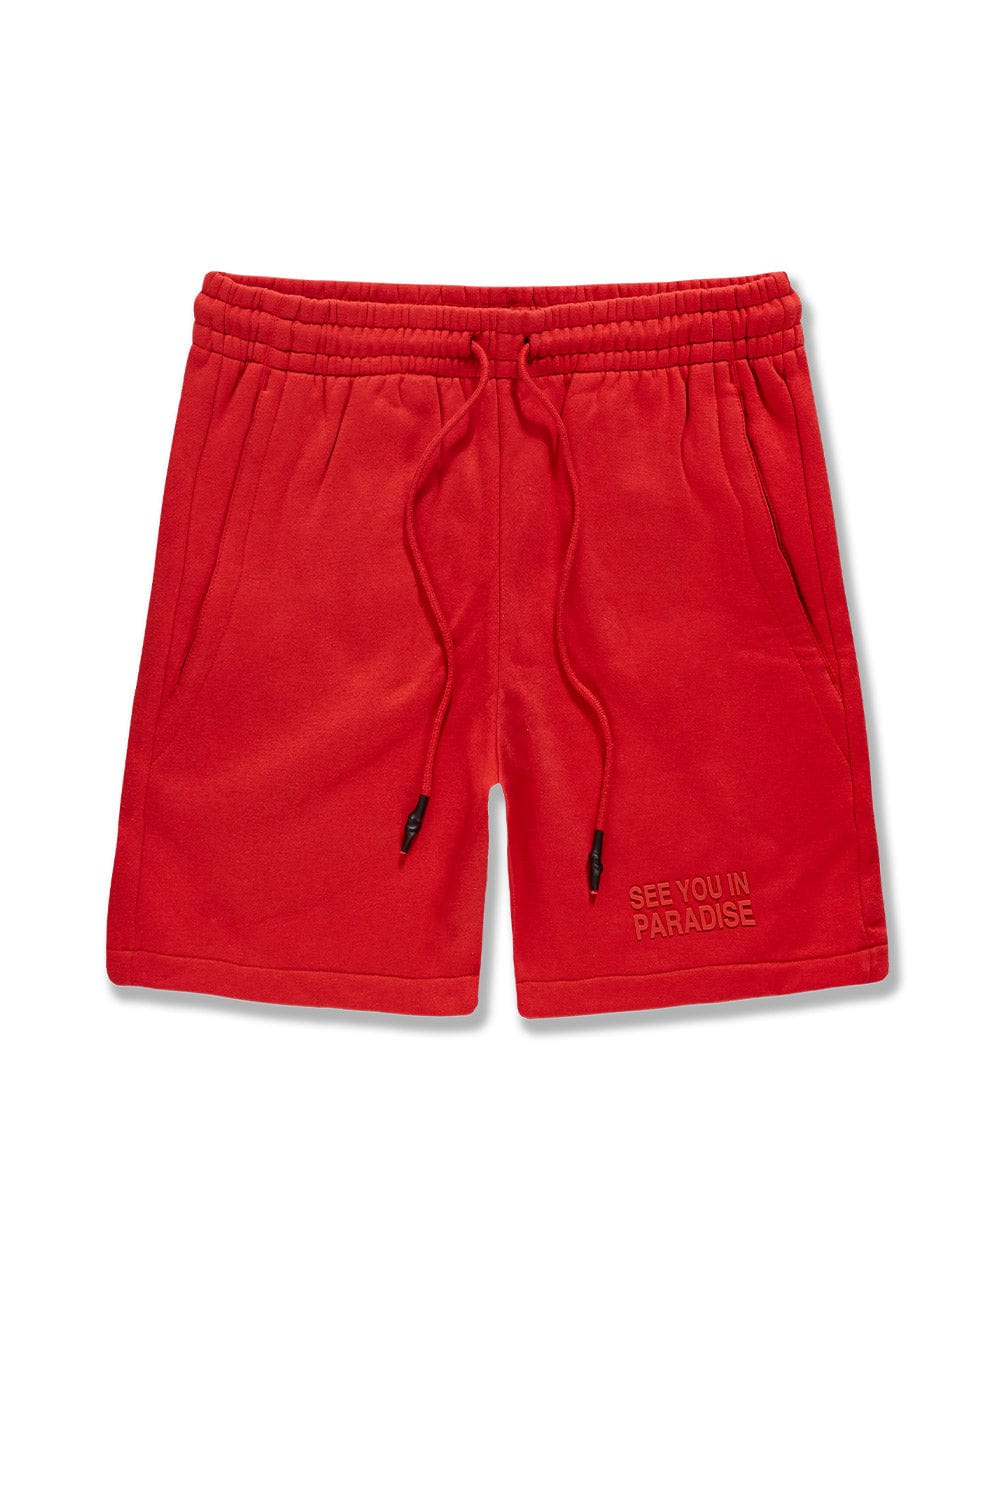 Jordan Craig Retro - Paradise Tonal Shorts Red / S